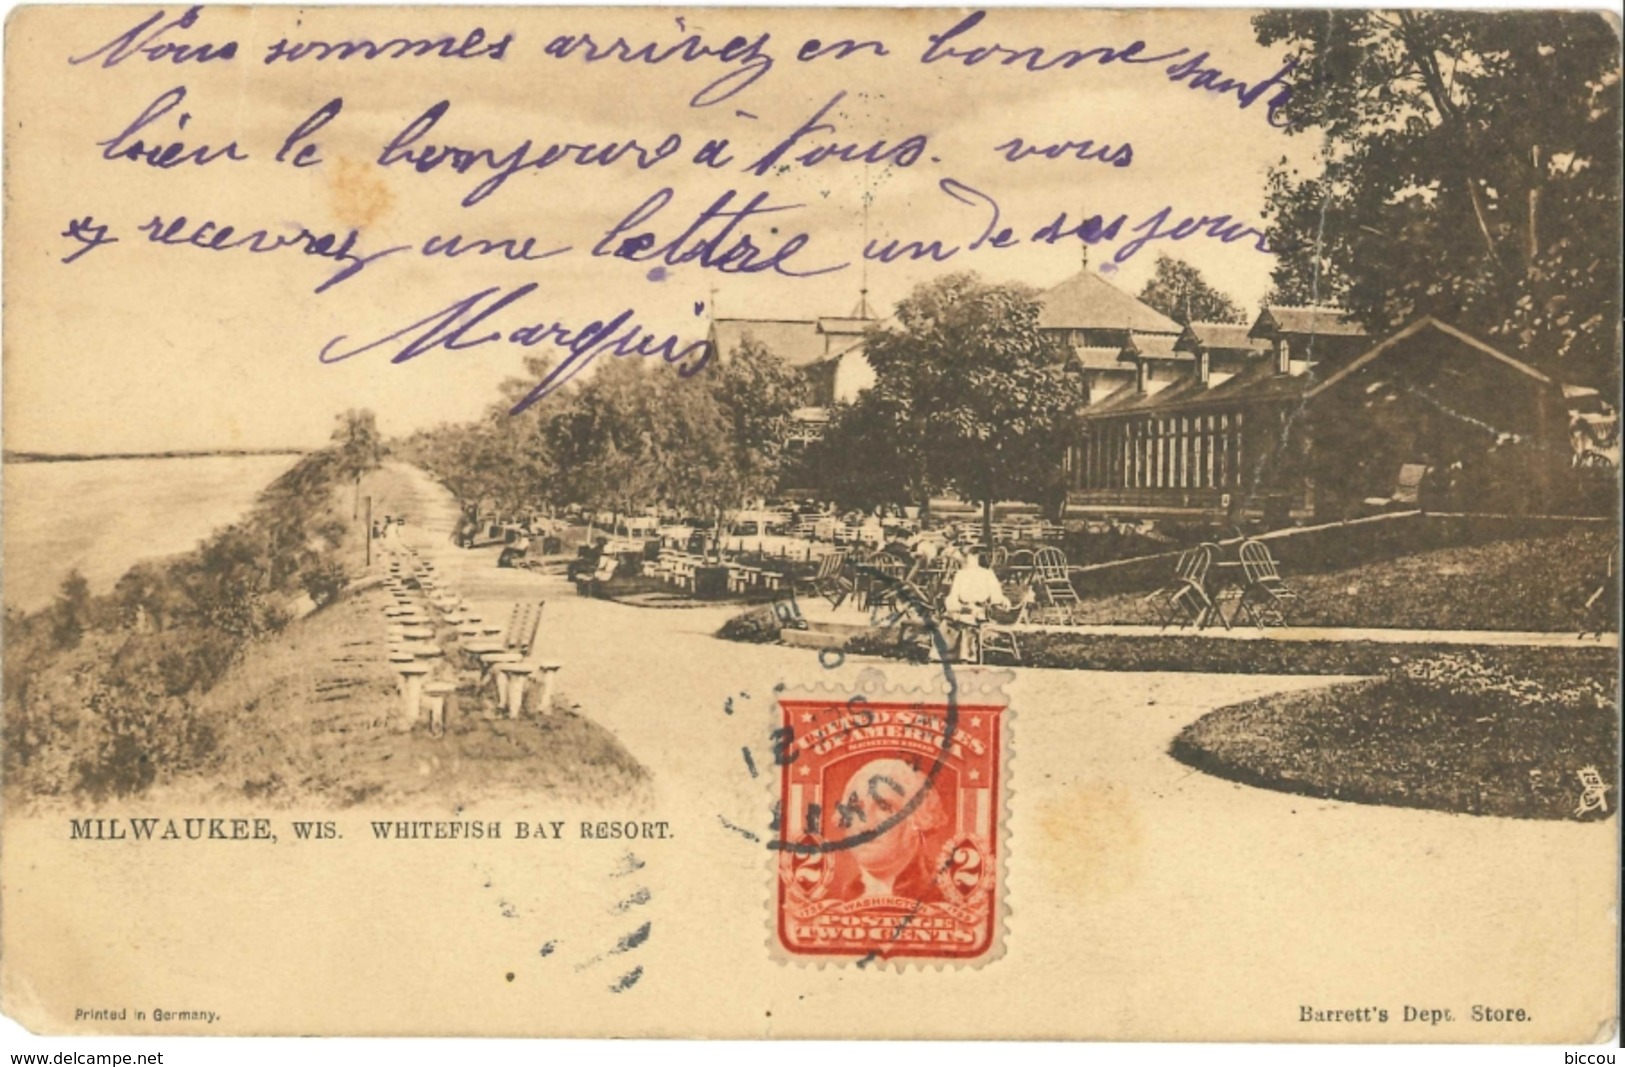 Post Card 1905 - MILWAUKEE - Whitefish Bay Resort - Barrett's Dept Store - Raphael Tuck & Sons' - Milwaukee